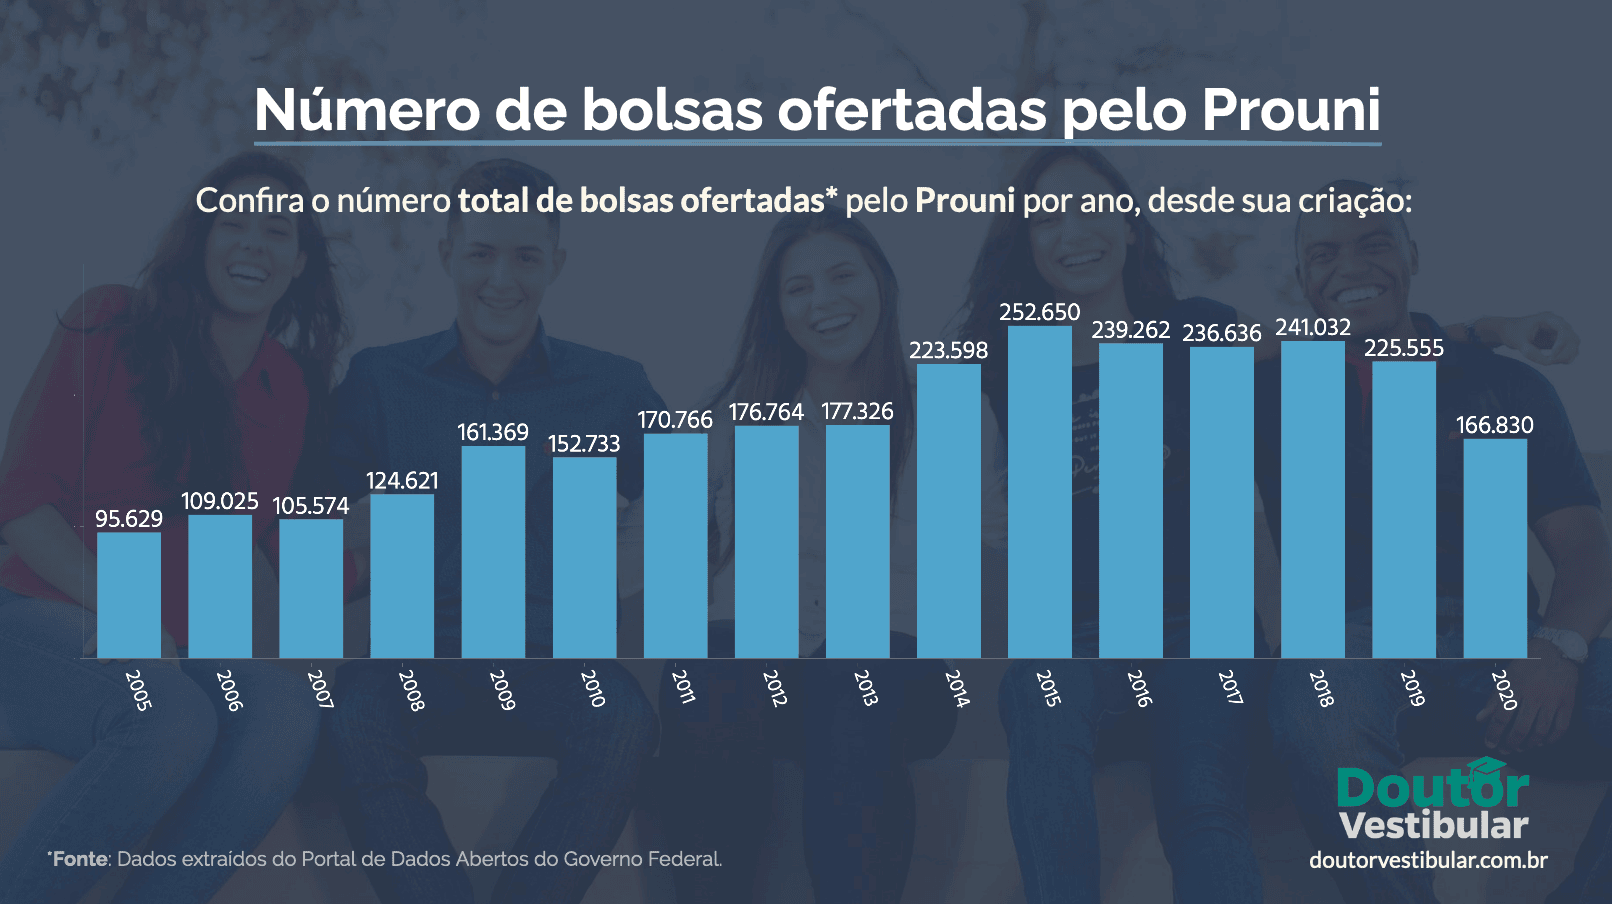 Total de bolsas do Prouni concedidas do ano de 2005 até o ano de 2020